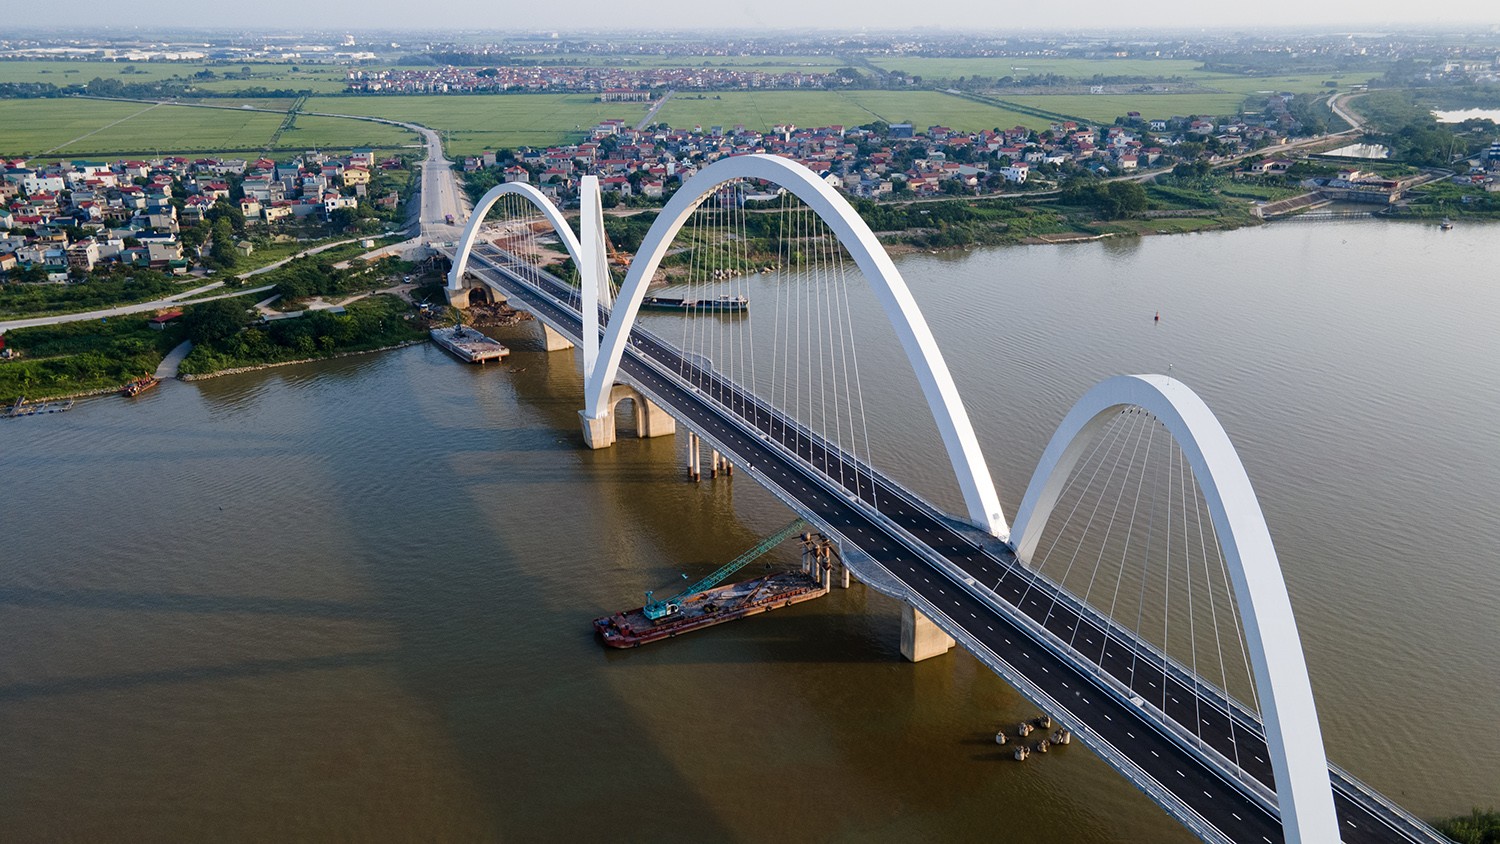 Cầu Phật Tích - Đại Đồng Thành bắc qua sông Đuống, nối huyện Tiên Du và Thuận Thành, được khởi công từ năm 2018, đây là công trình trọng điểm của tỉnh Bắc Ninh với tổng mức đầu tư 1.927 tỷ đồng.